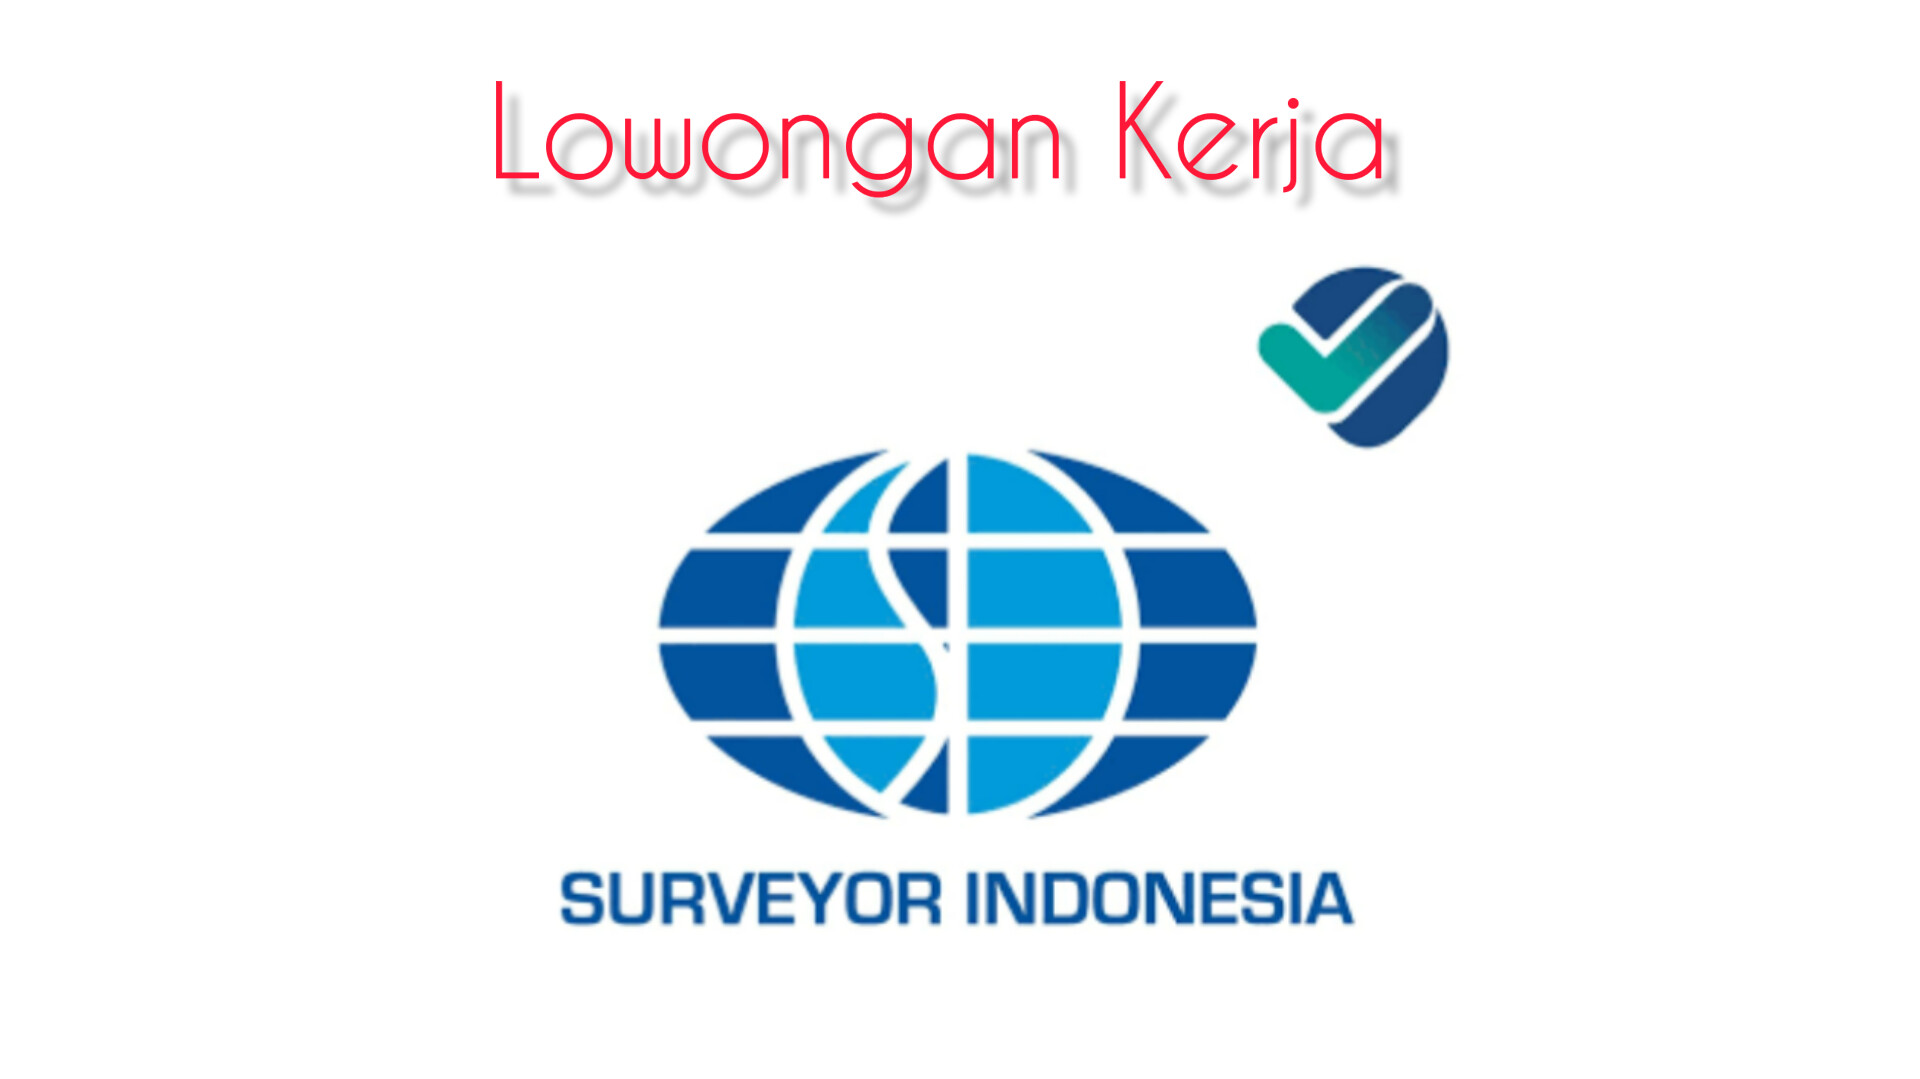 PT Surveyor Indonesia Buka Lowongan 5 Posisi Ini, Deadline 9 Februari